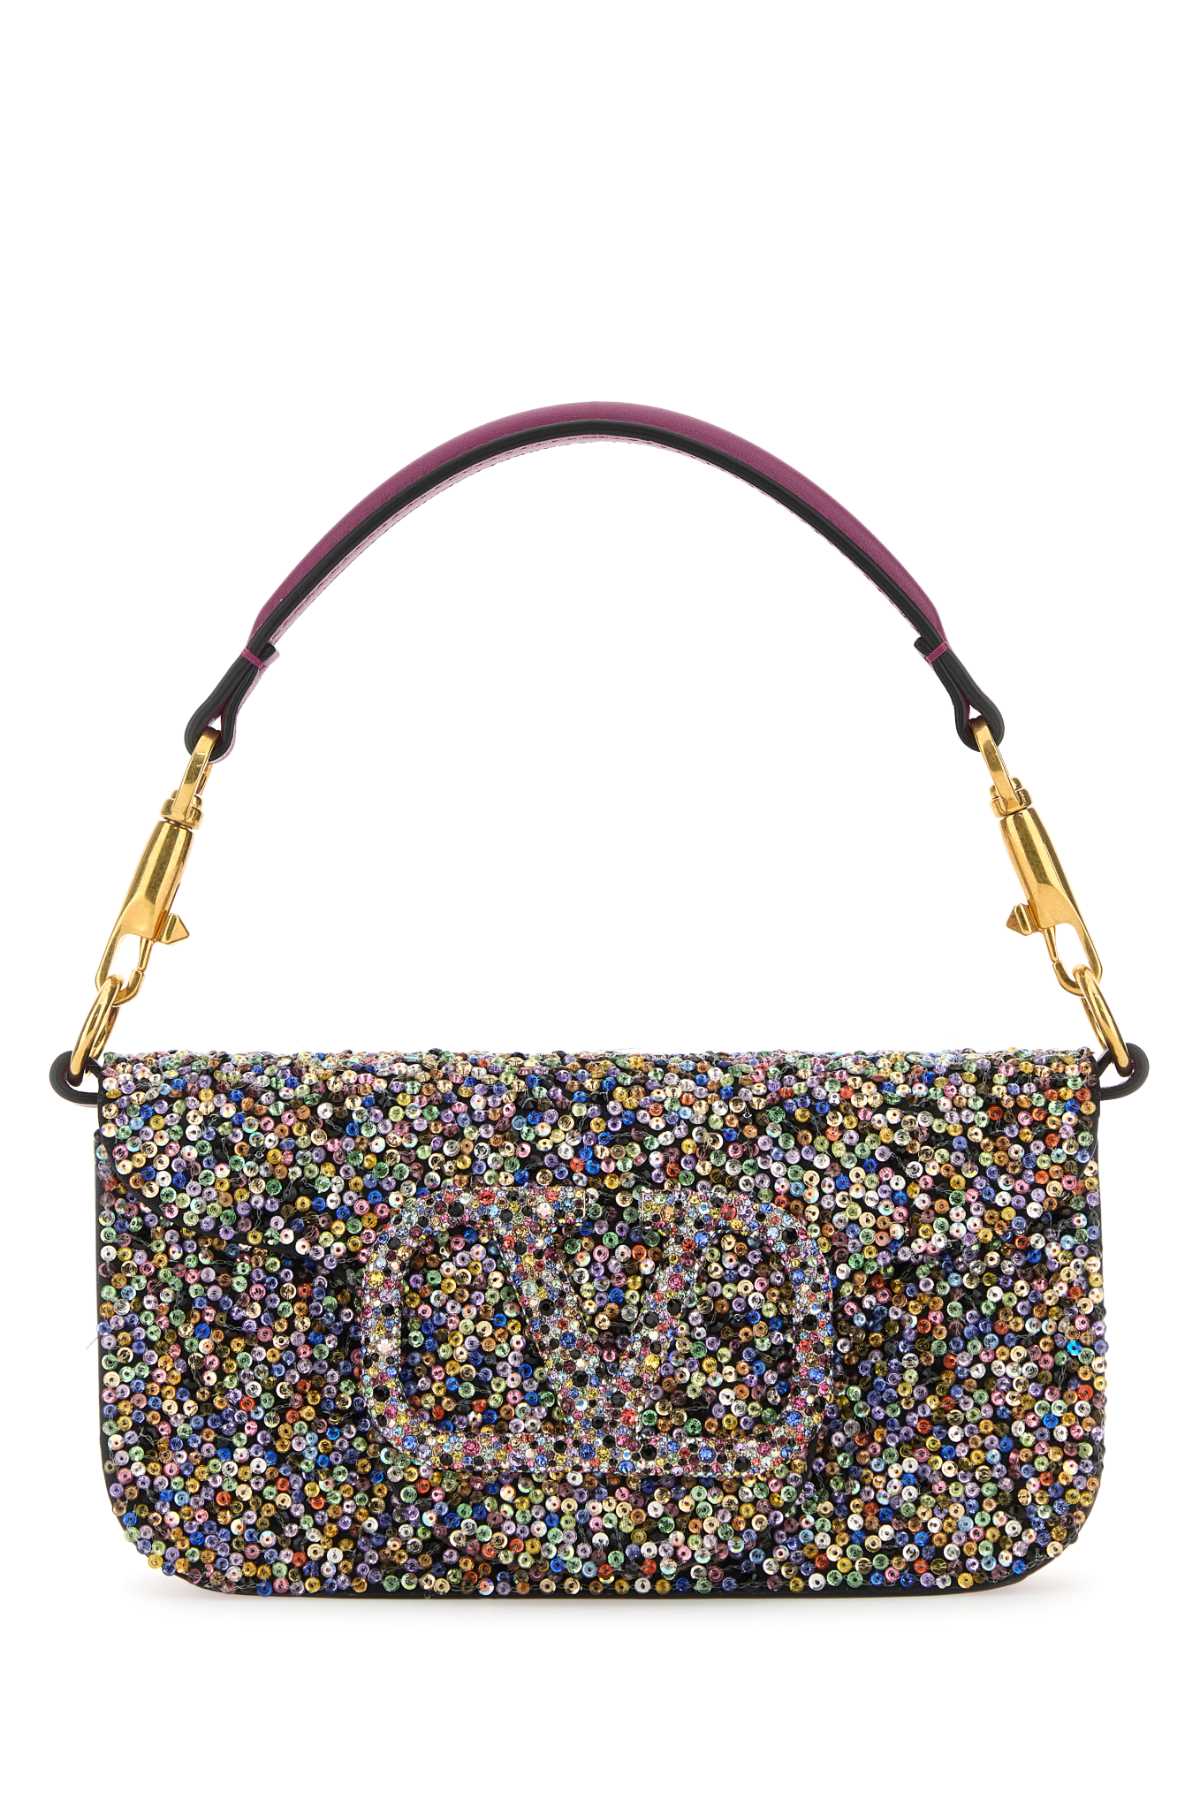 Shop Valentino Embellished Leather Small Locã² Handbag In Multicolormagentapurplemulticolor